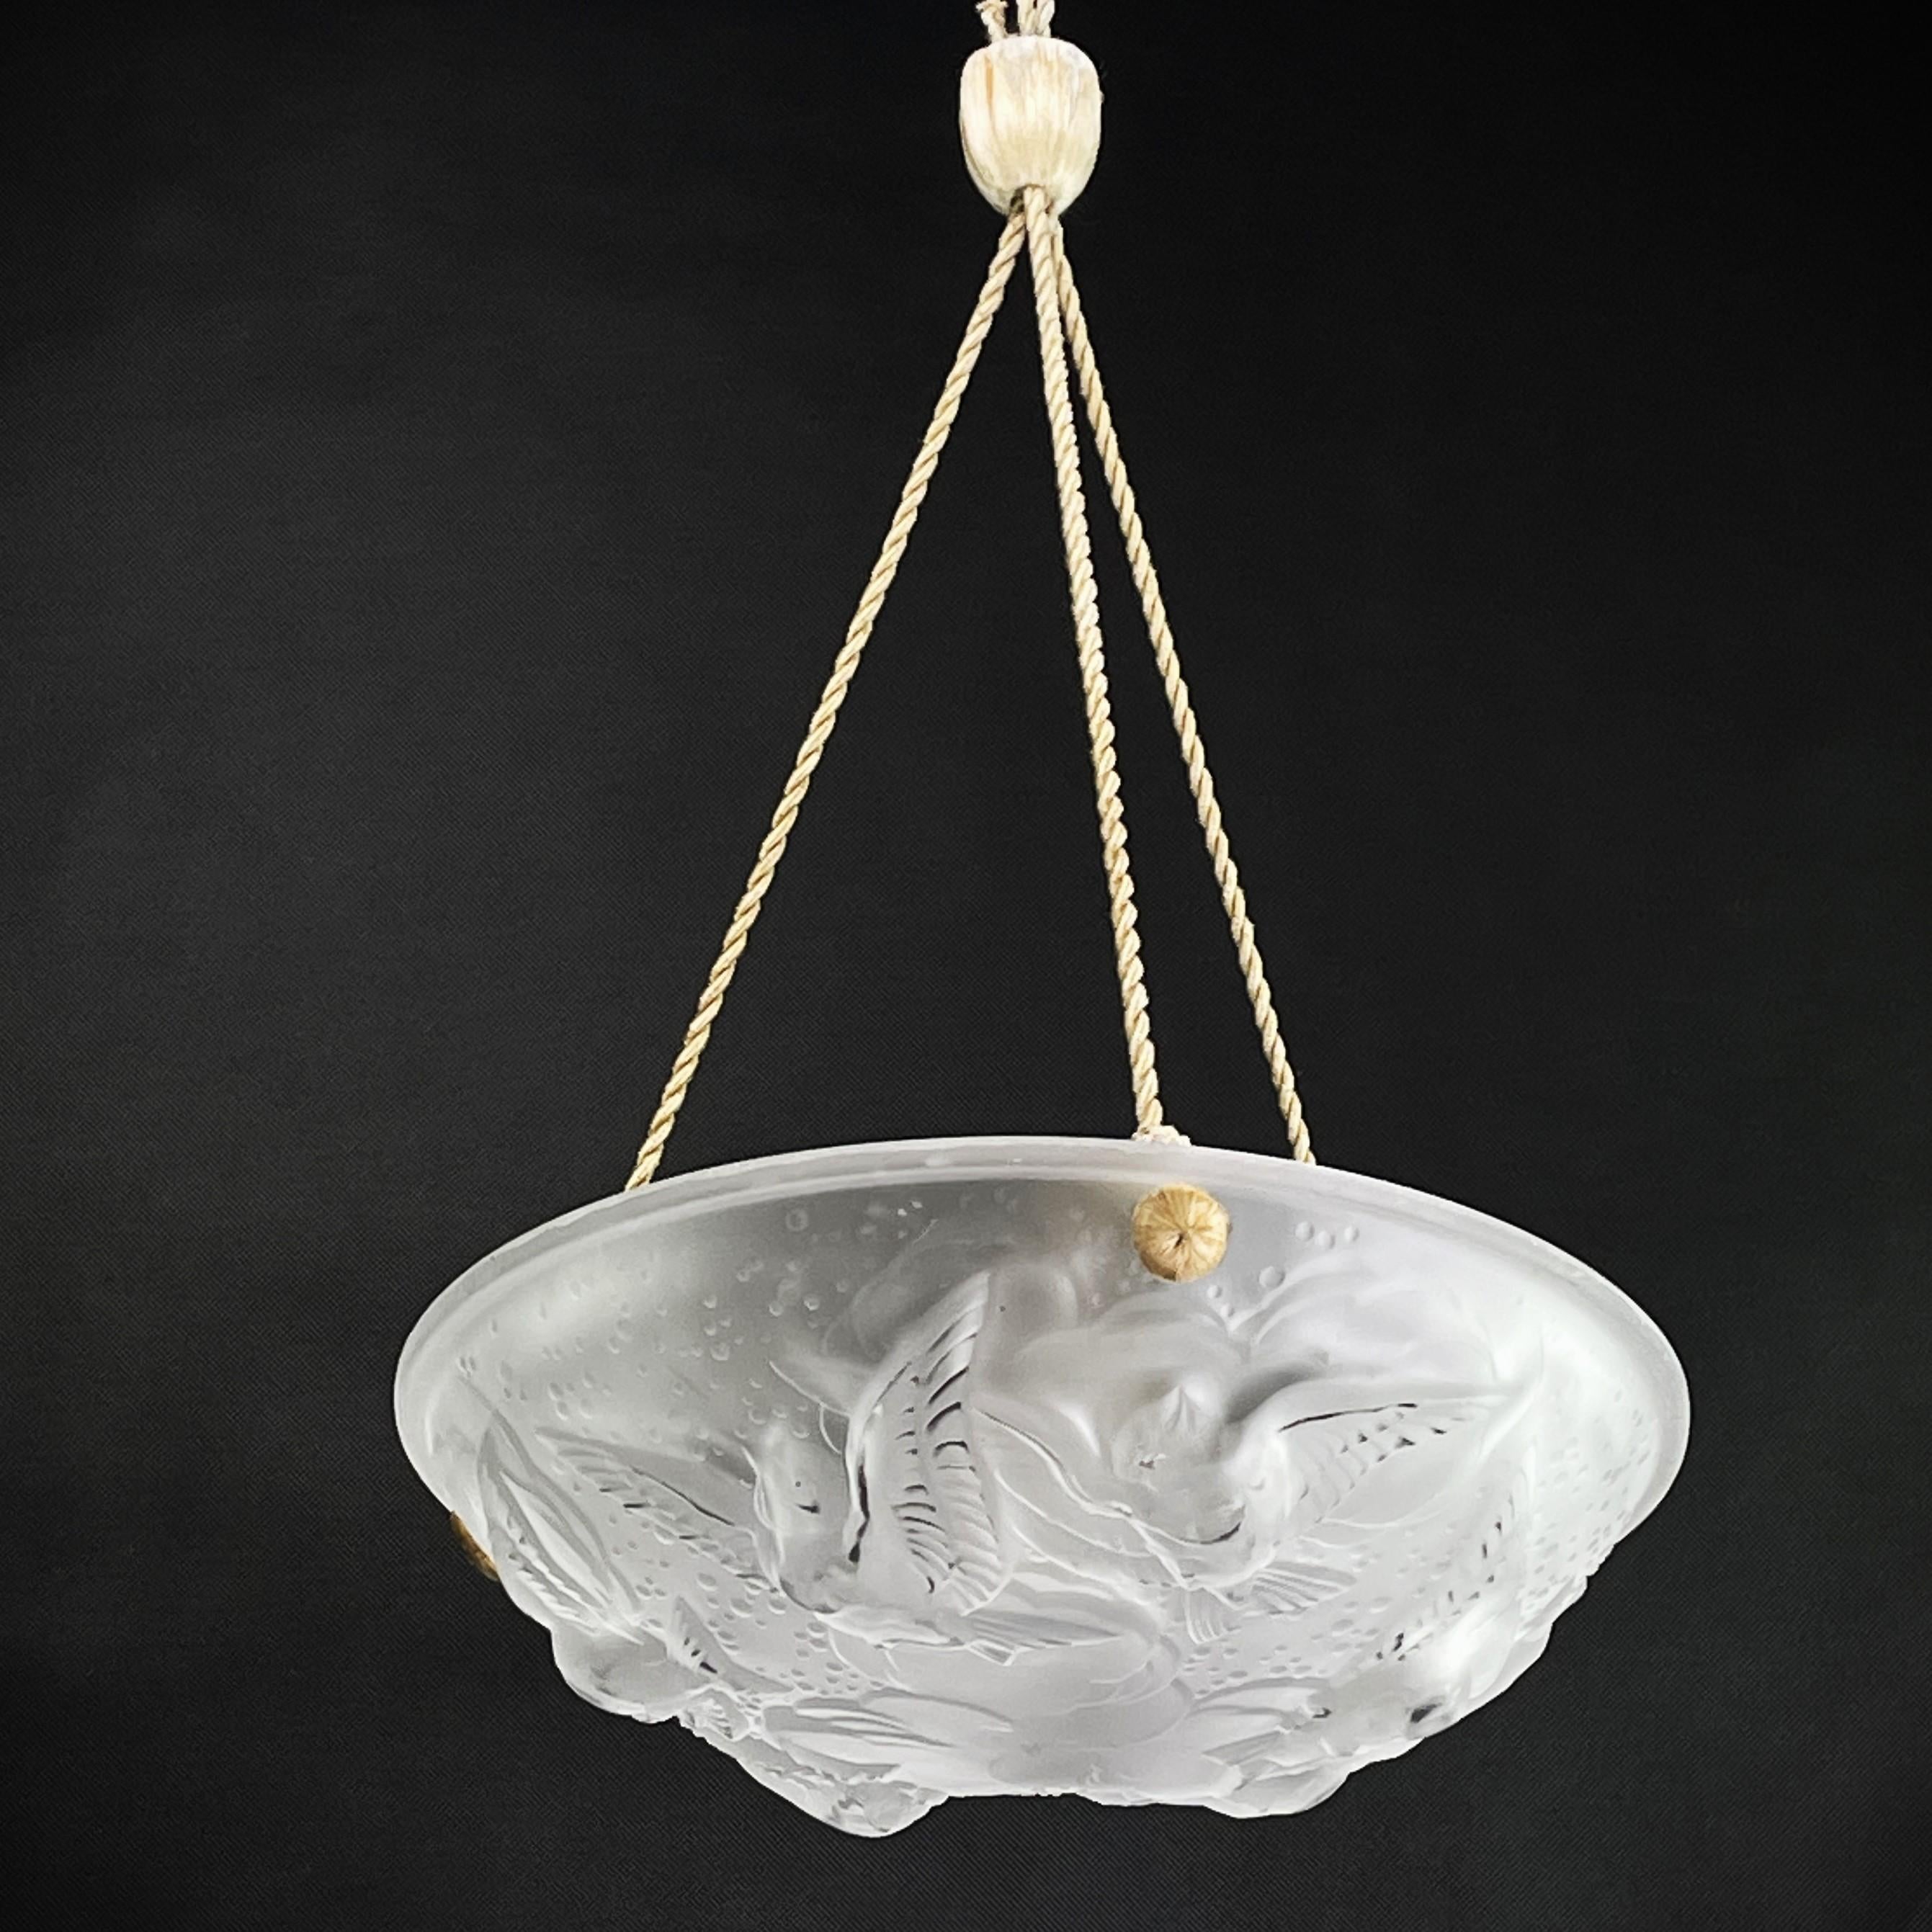 1 lampe Art déco  

Le plafonnier ART DECO est un exemple remarquable de l'artisanat et du style du début du XXe siècle. 

Le plafonnier signé est un signe de l'artisanat et de la qualité exceptionnels pour lesquels cette société renommée est